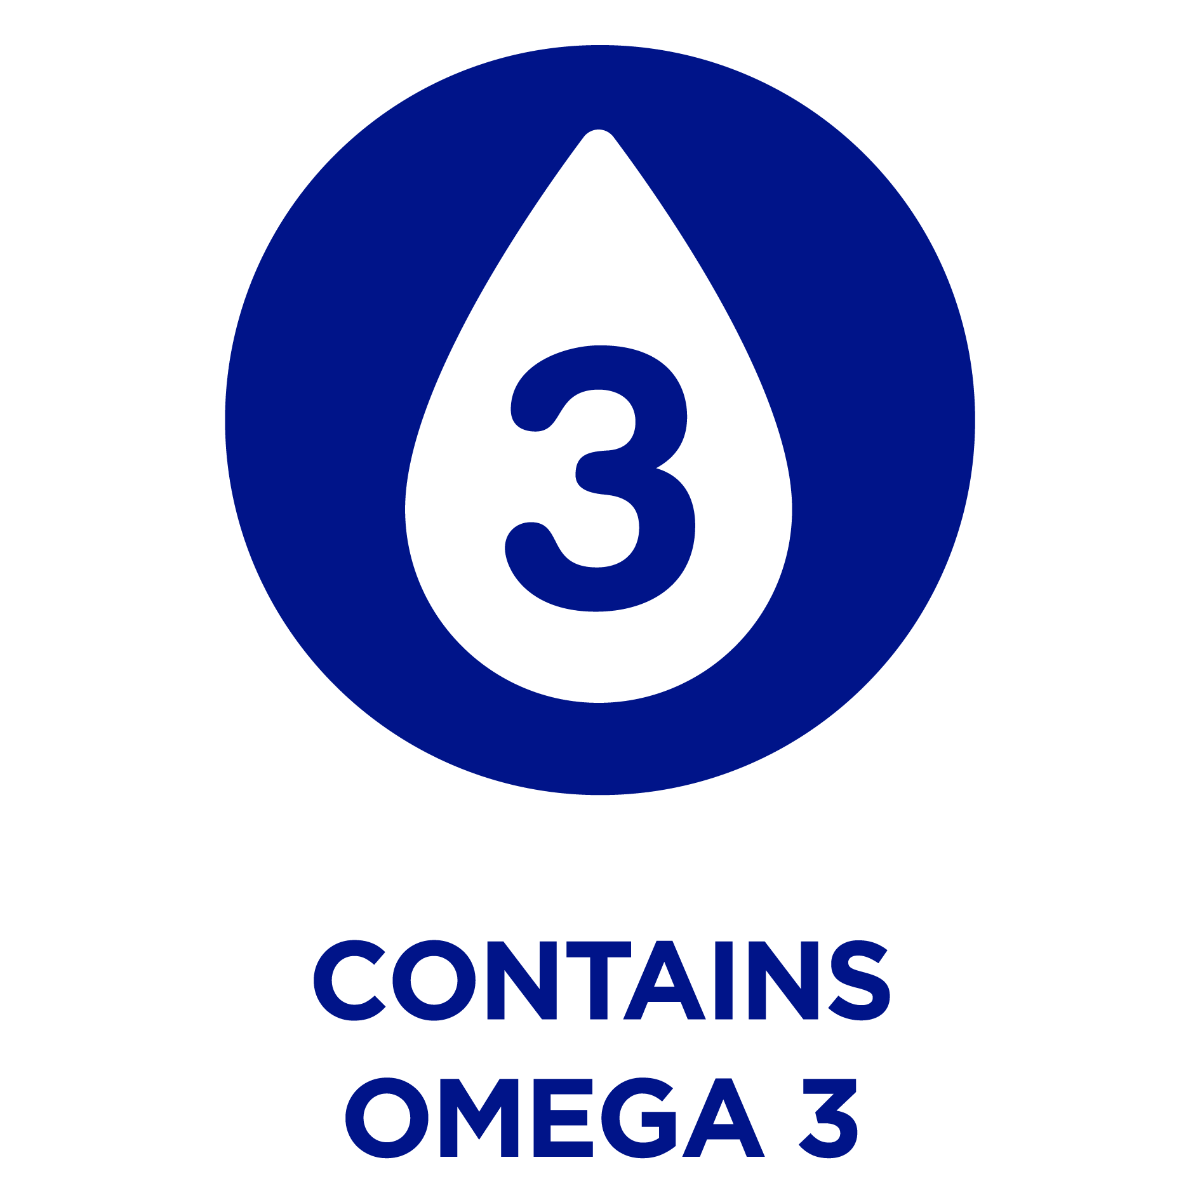 يحتوي على أوميغا 3